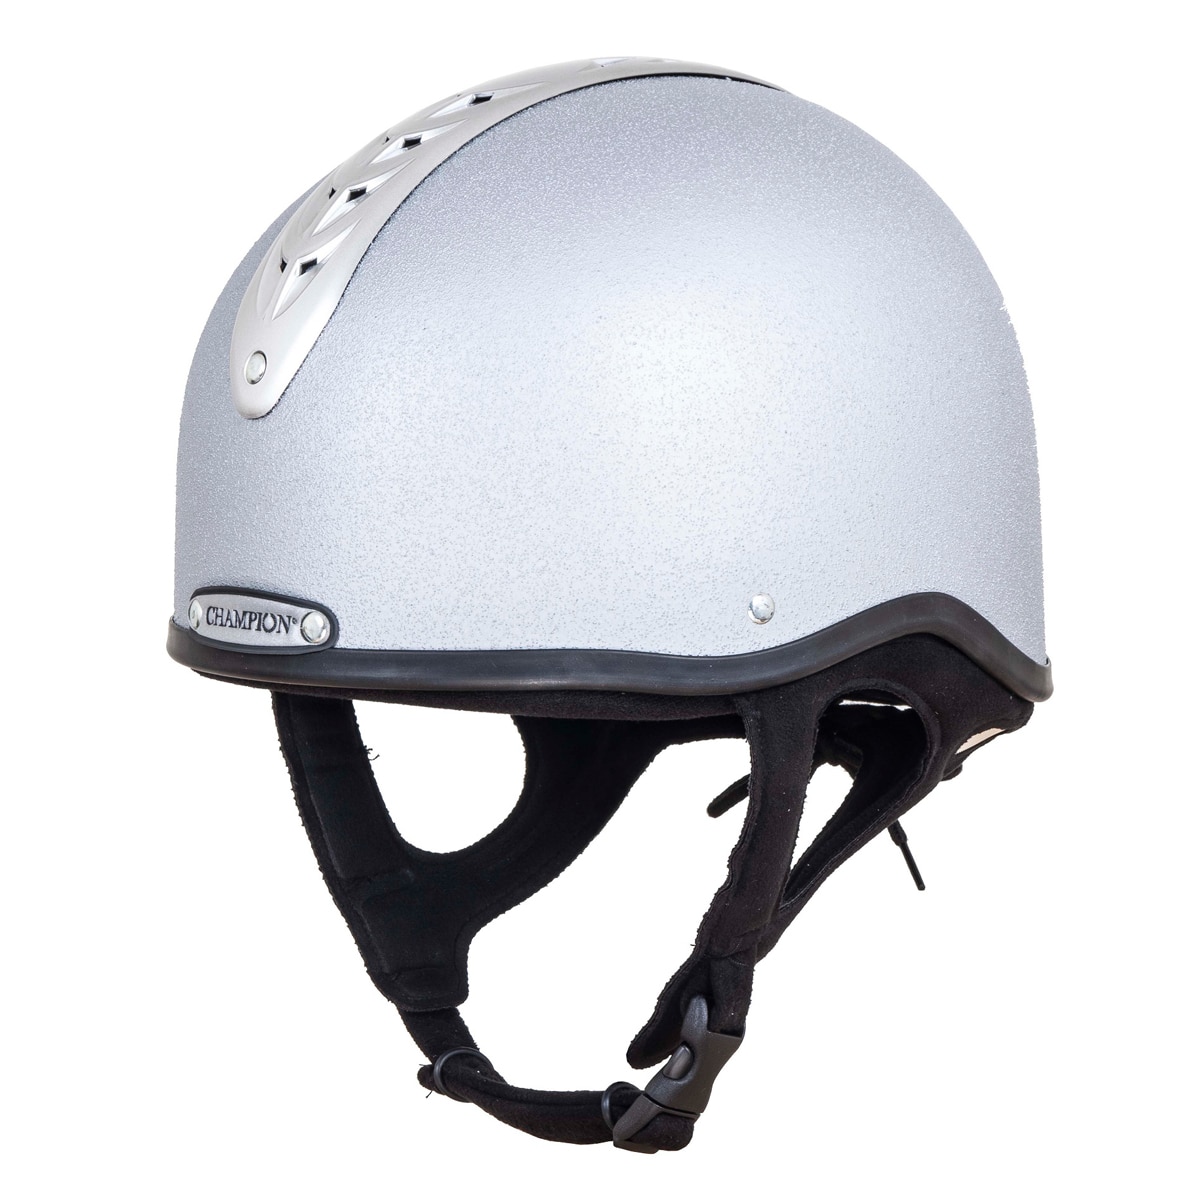 Helmet Kitemark PAS015.2011 Champion Ventair Deluxe Jockey Skull Riding Hat 